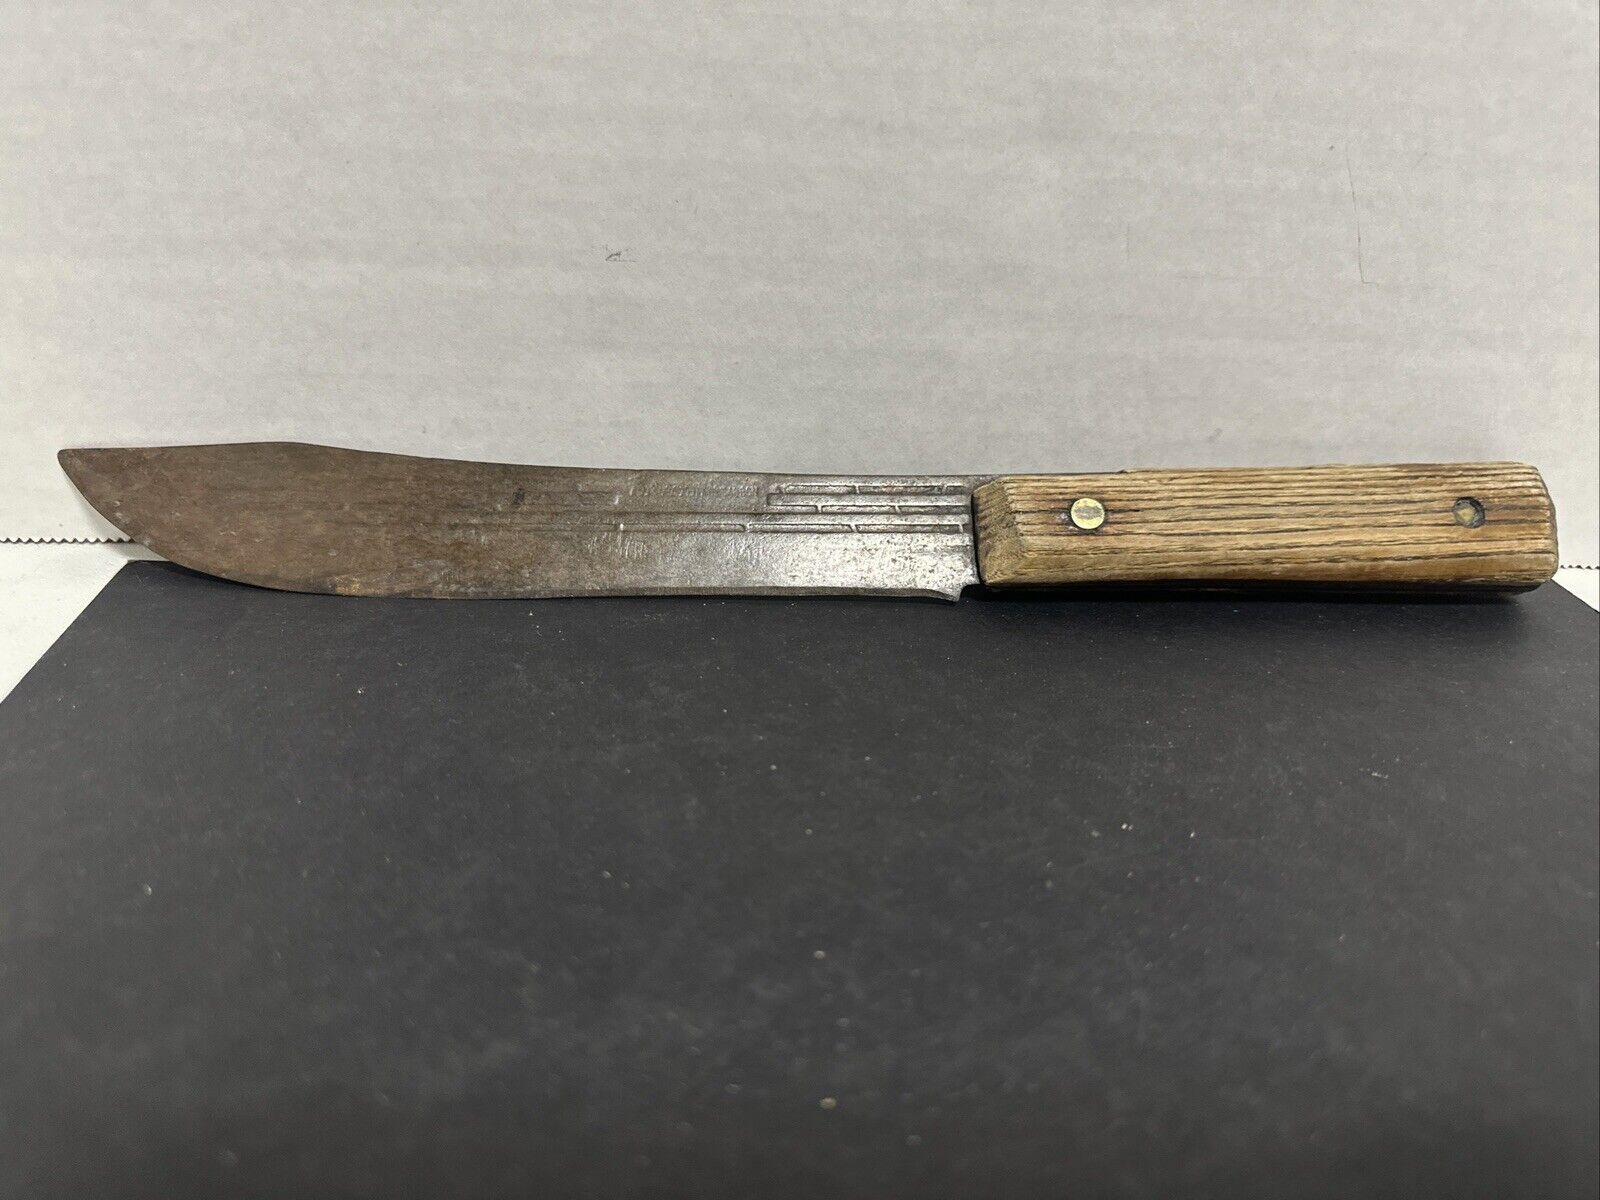 Vintage Forgecraft Hi-Carbon Steel Butcher Knife 7” Blade 11 5/8” Overall Length